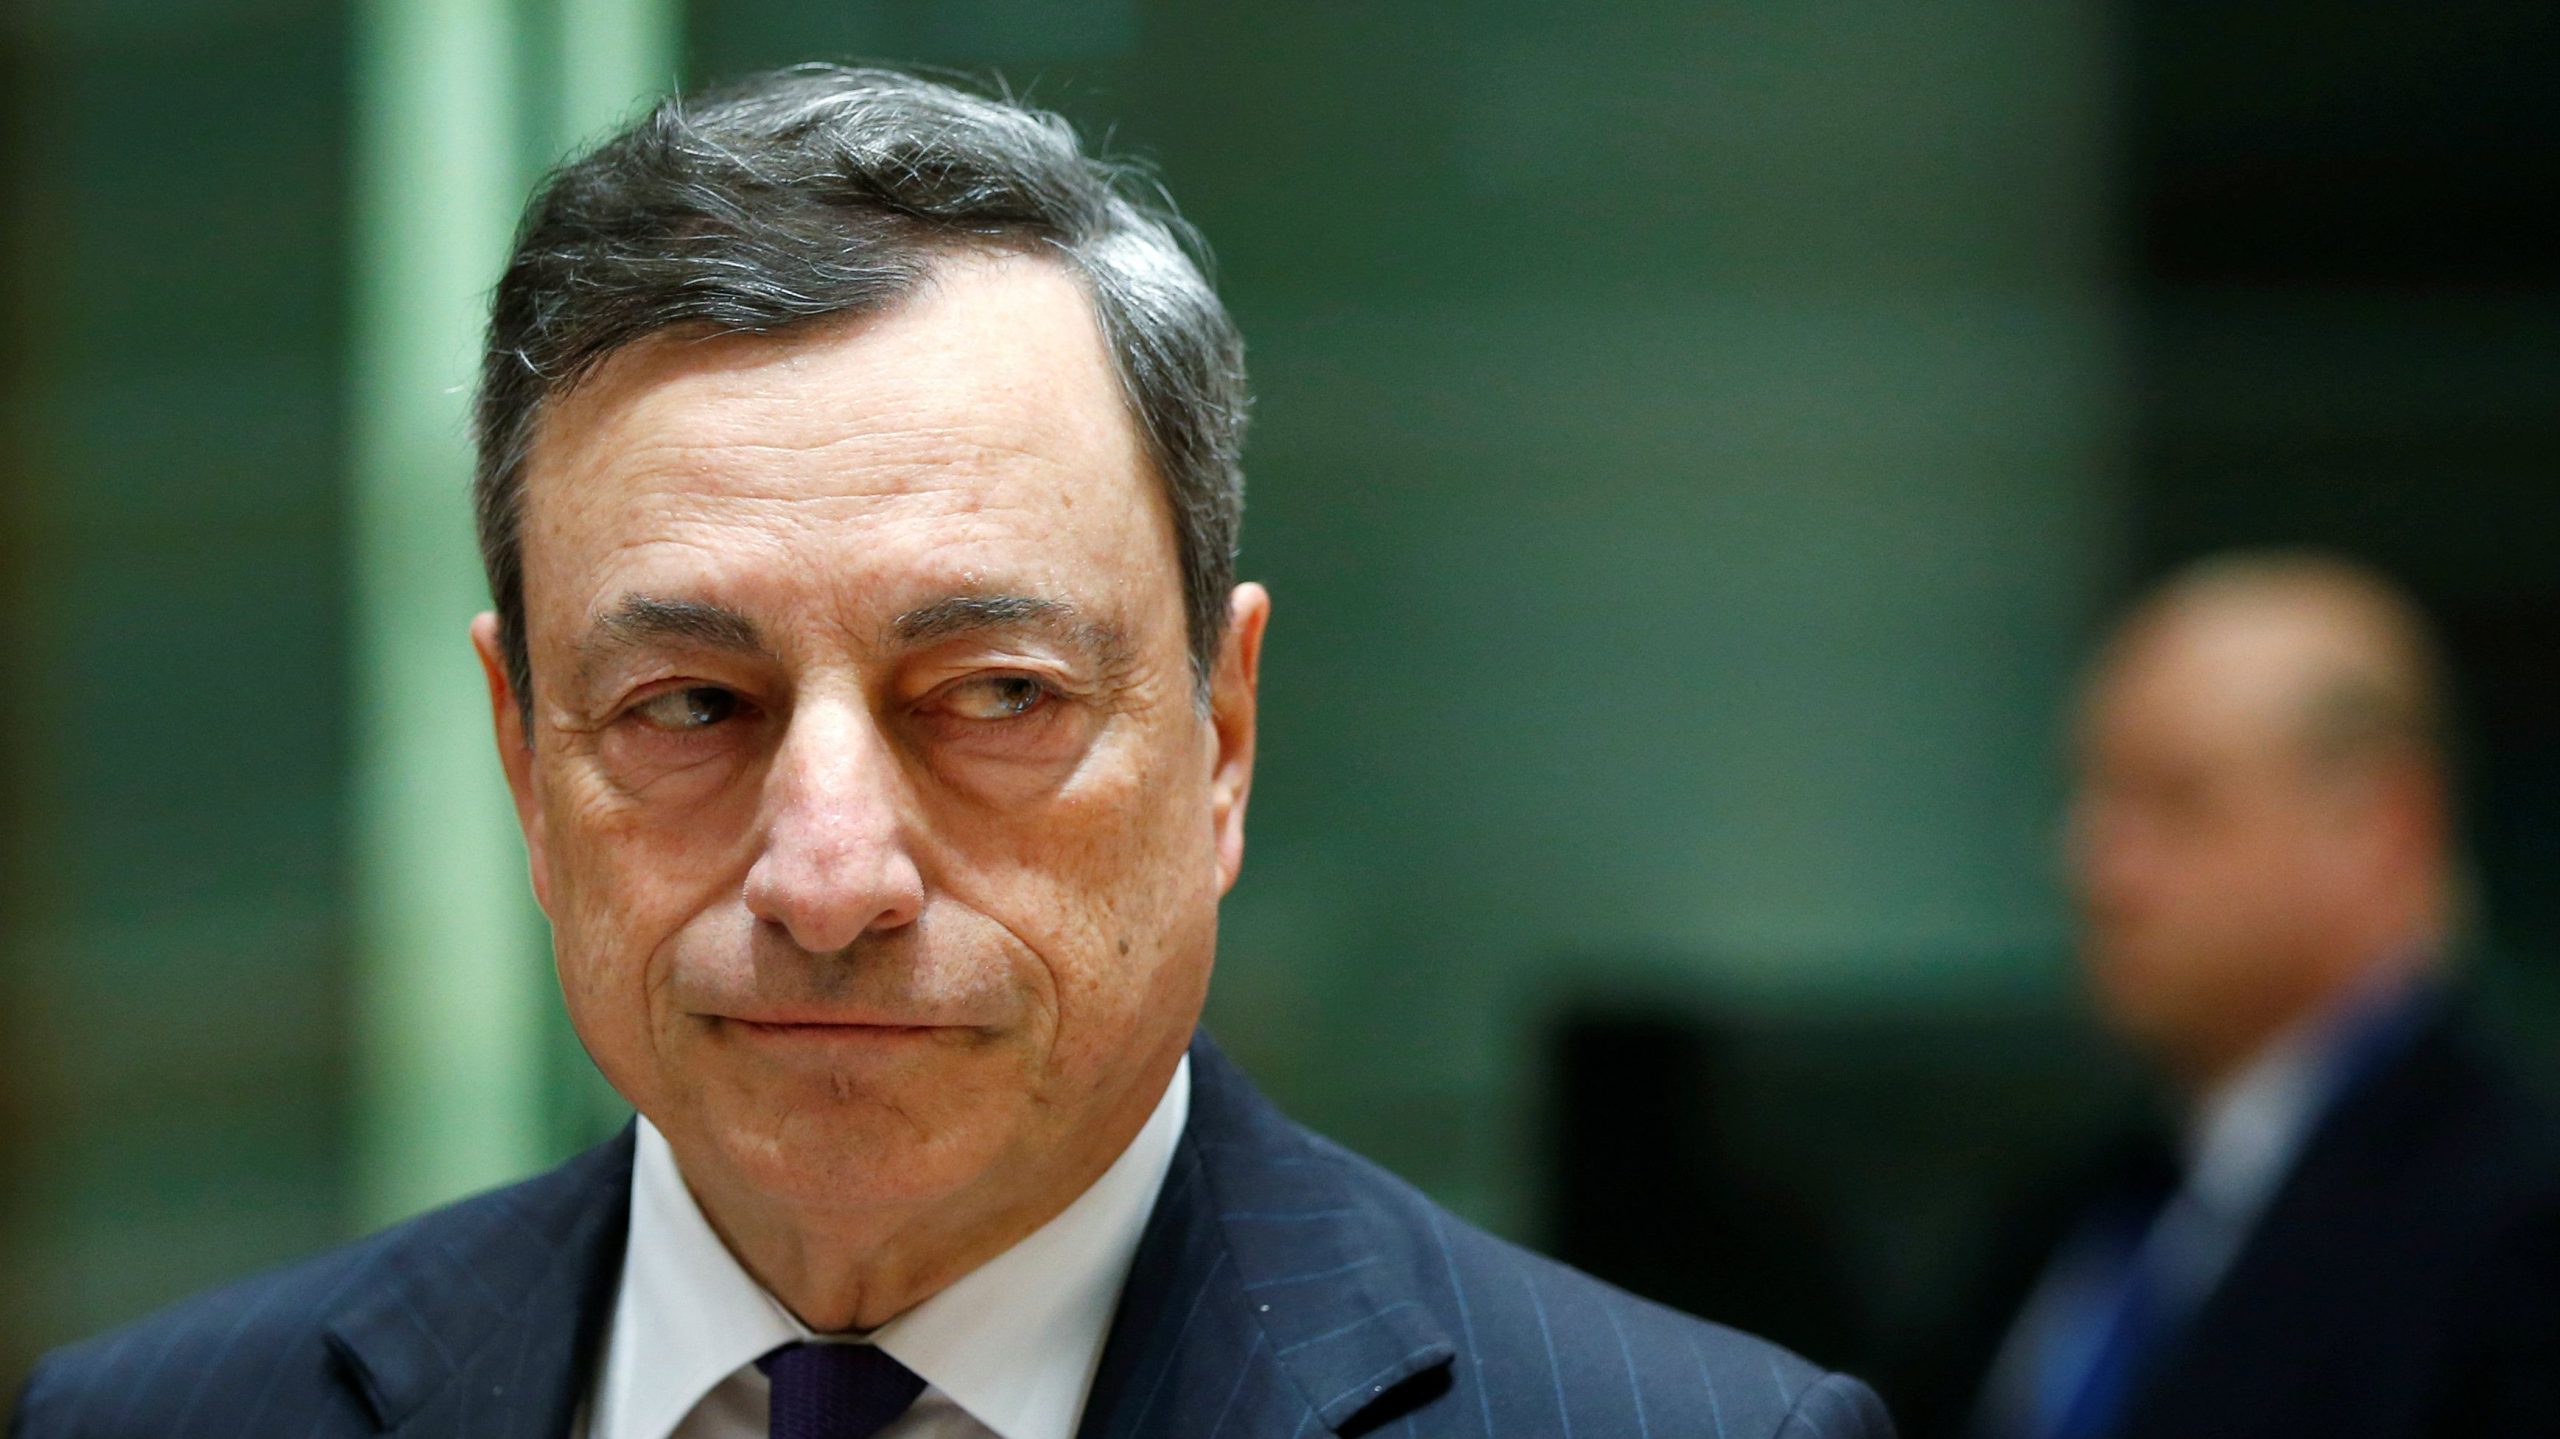 Ο Μ.Ντράγκι προσπαθεί να αναβάλλει την αύξηση των επιτοκίων στην ευρωζώνη